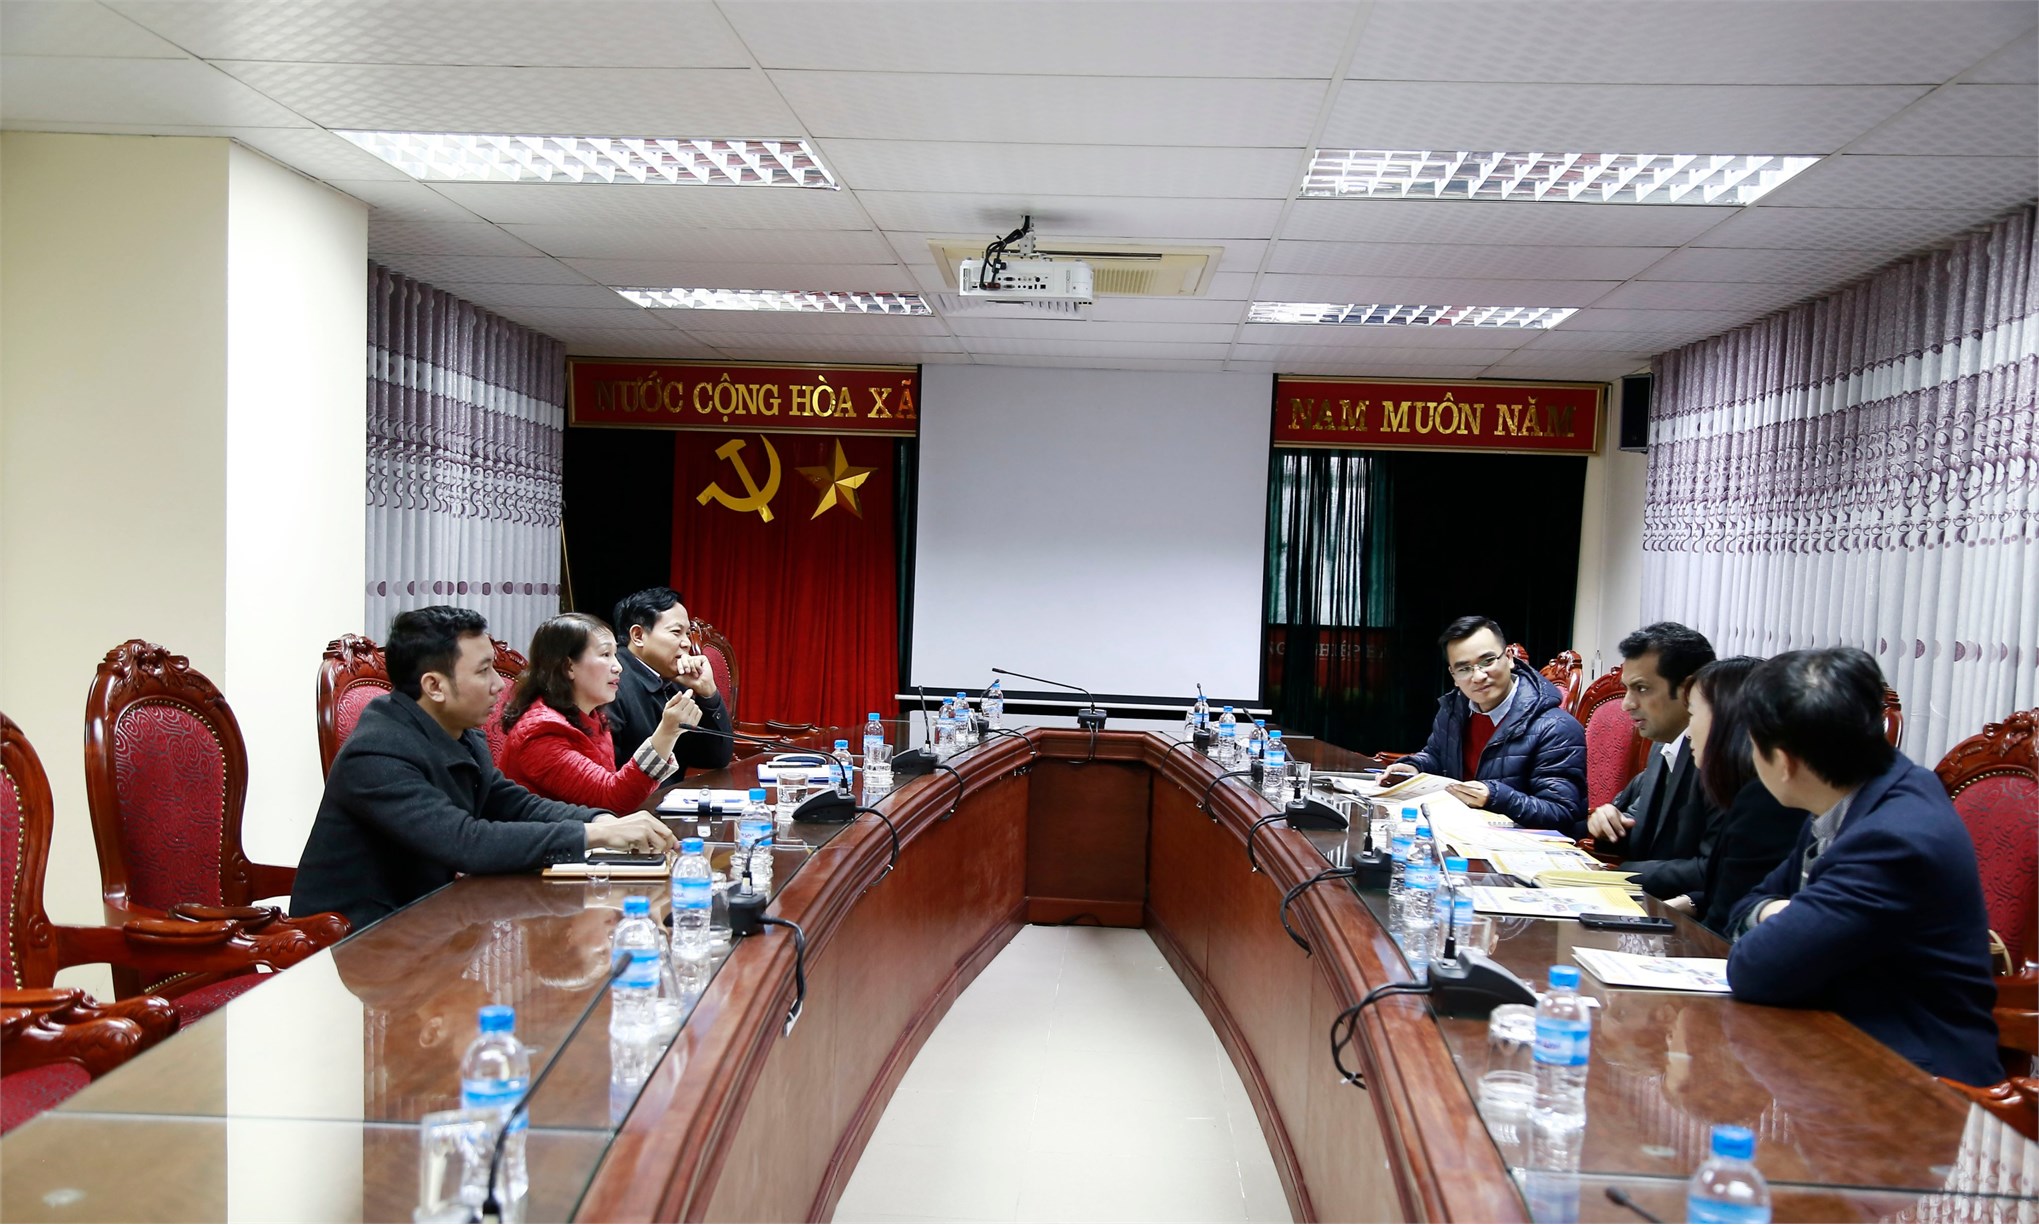 Đại học Công nghiệp Hà Nội làm việc với HCL